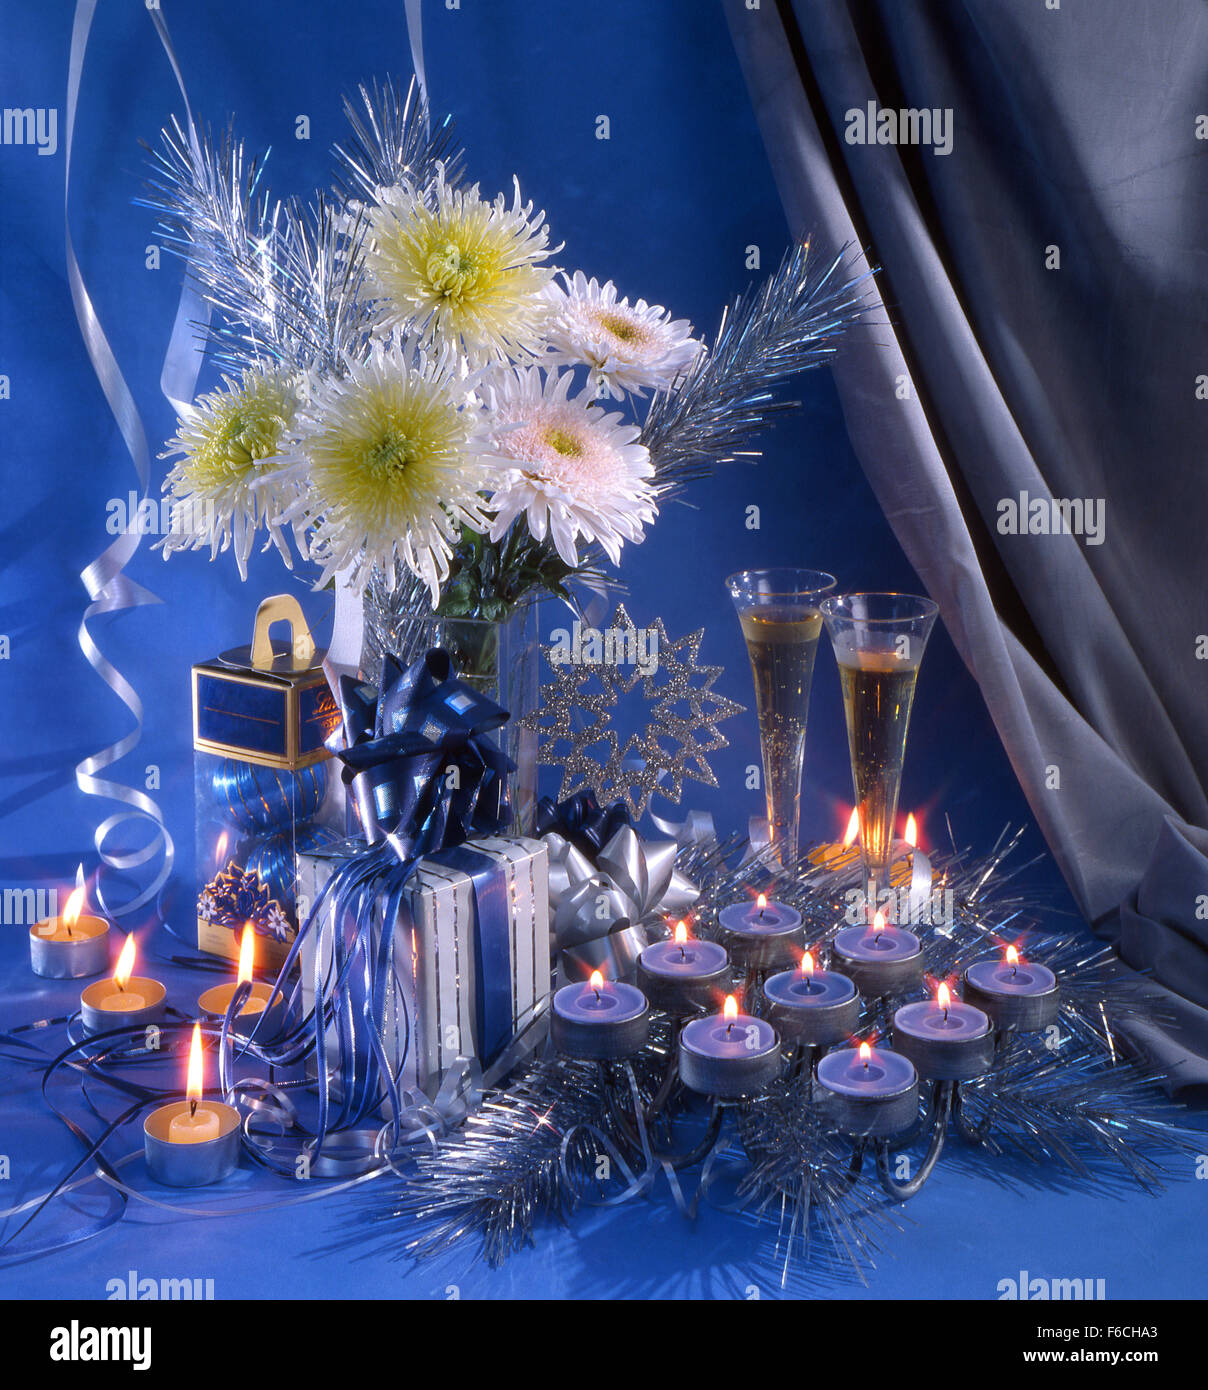 La nouvelle année de fête, Noël encore la vie avec deux verres de vin, un bouquet de chrysanthèmes blancs et un chandelier Banque D'Images